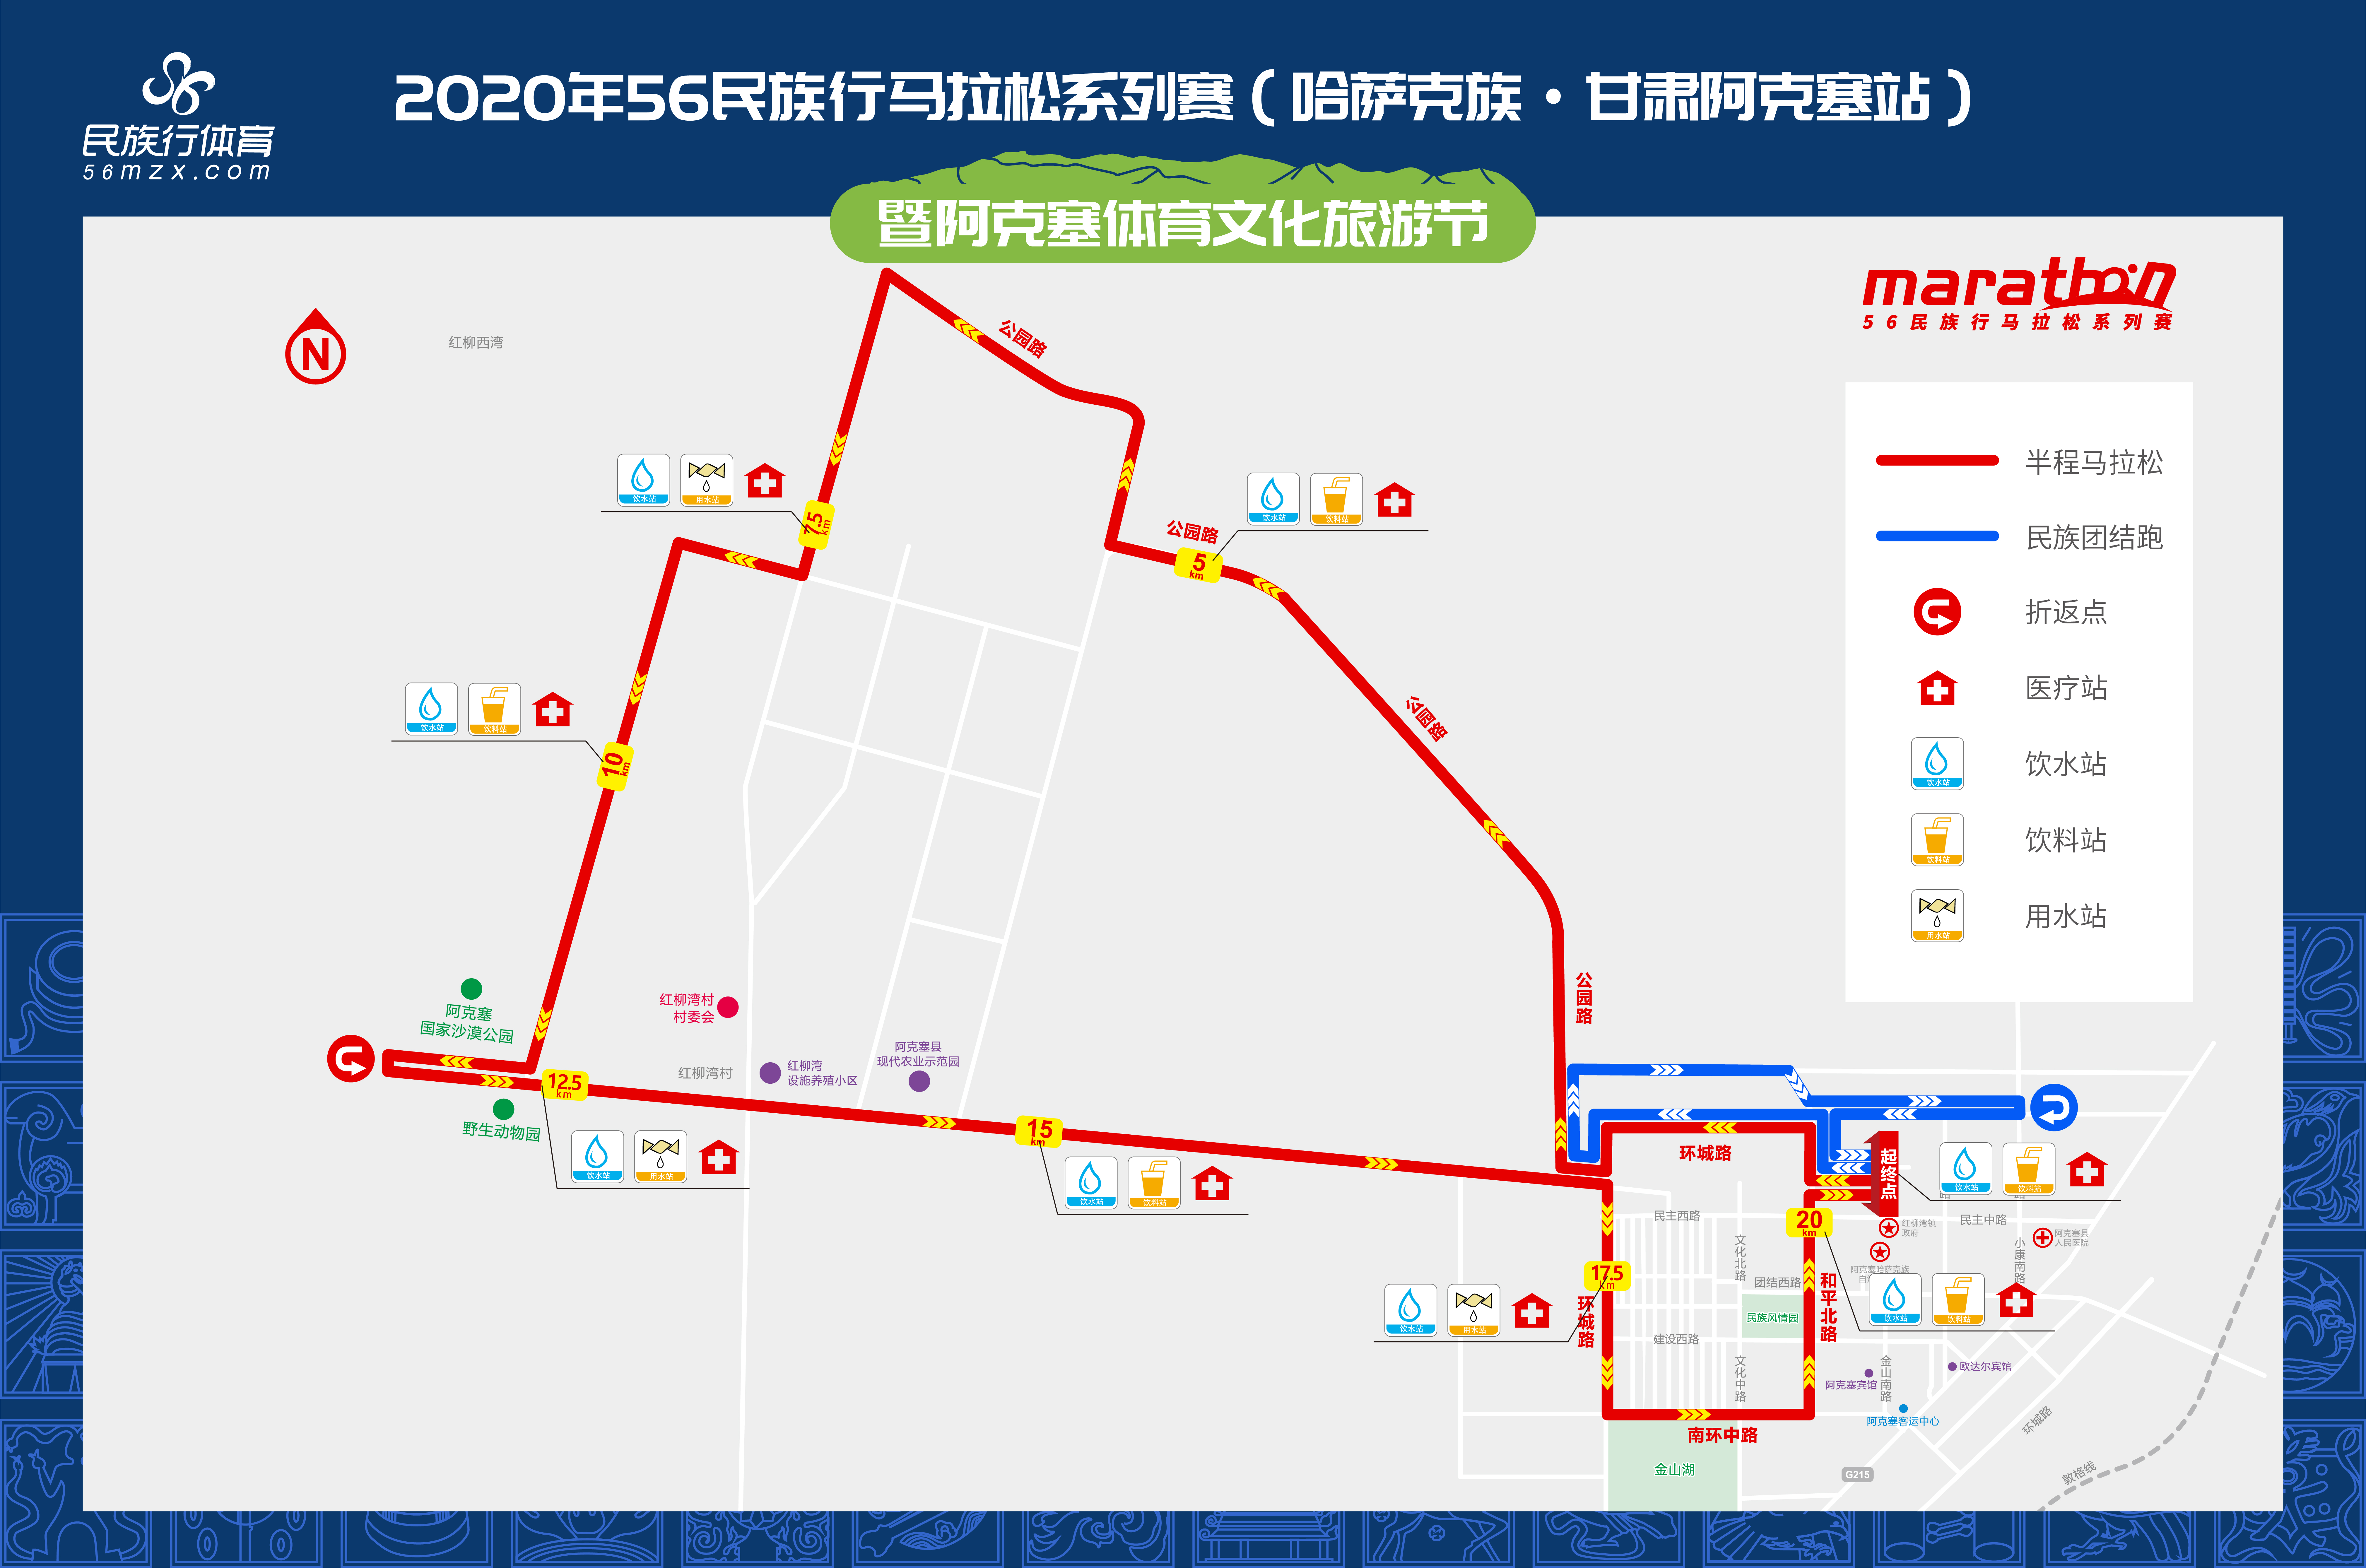 2020年56民族行马拉松系列赛(哈萨克族·甘肃阿克塞站